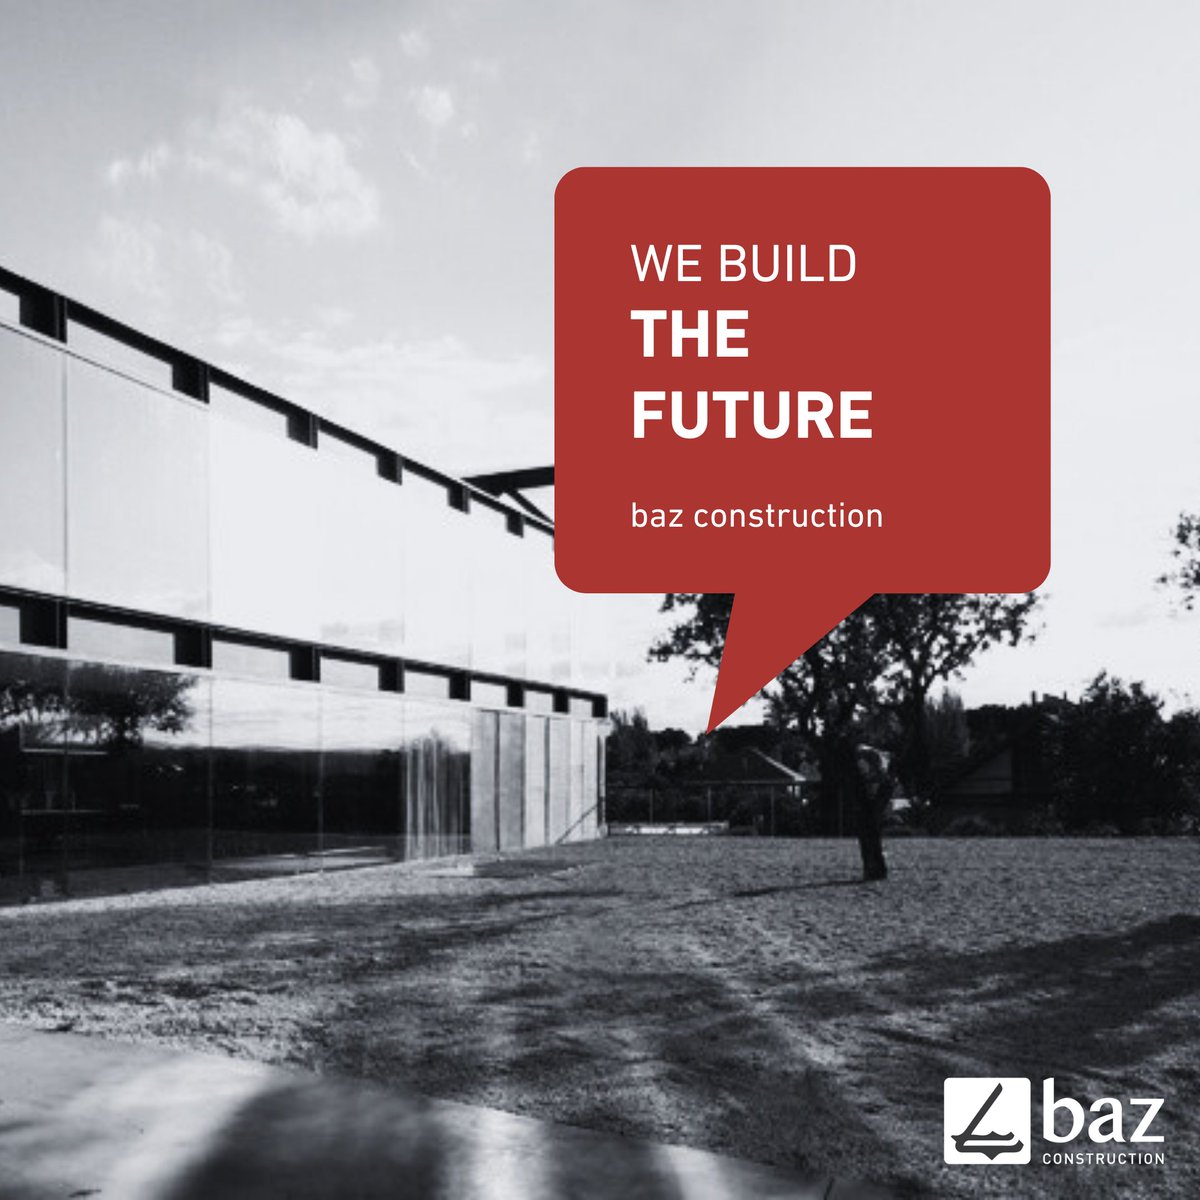 We build the future!

#BazConstruction #BazAcademy #CivilEngineering #build #construction #ConstructionTechnology #ConstructionTrends #inşaat #inşaatsektörü #inşaatmühendisi #architecture